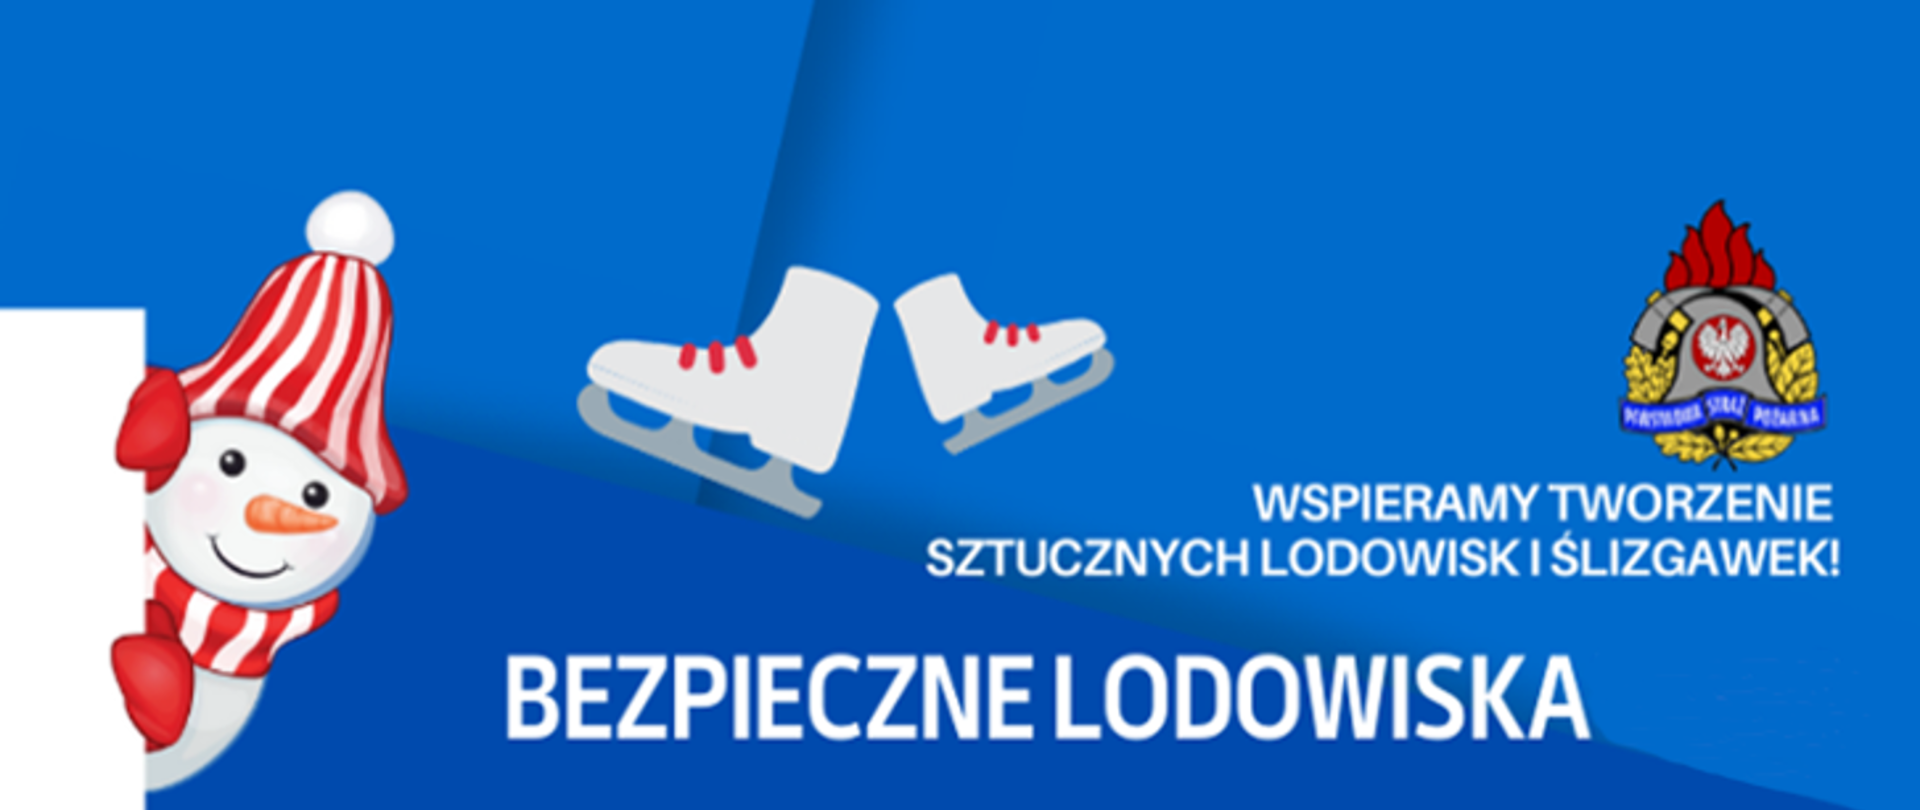 Zdjęcie przedstawia logo akcji bezpieczne lodowiska. Logo koloru niebieskiego. Na logo widać również logo PSP, łyżwy i bałwana